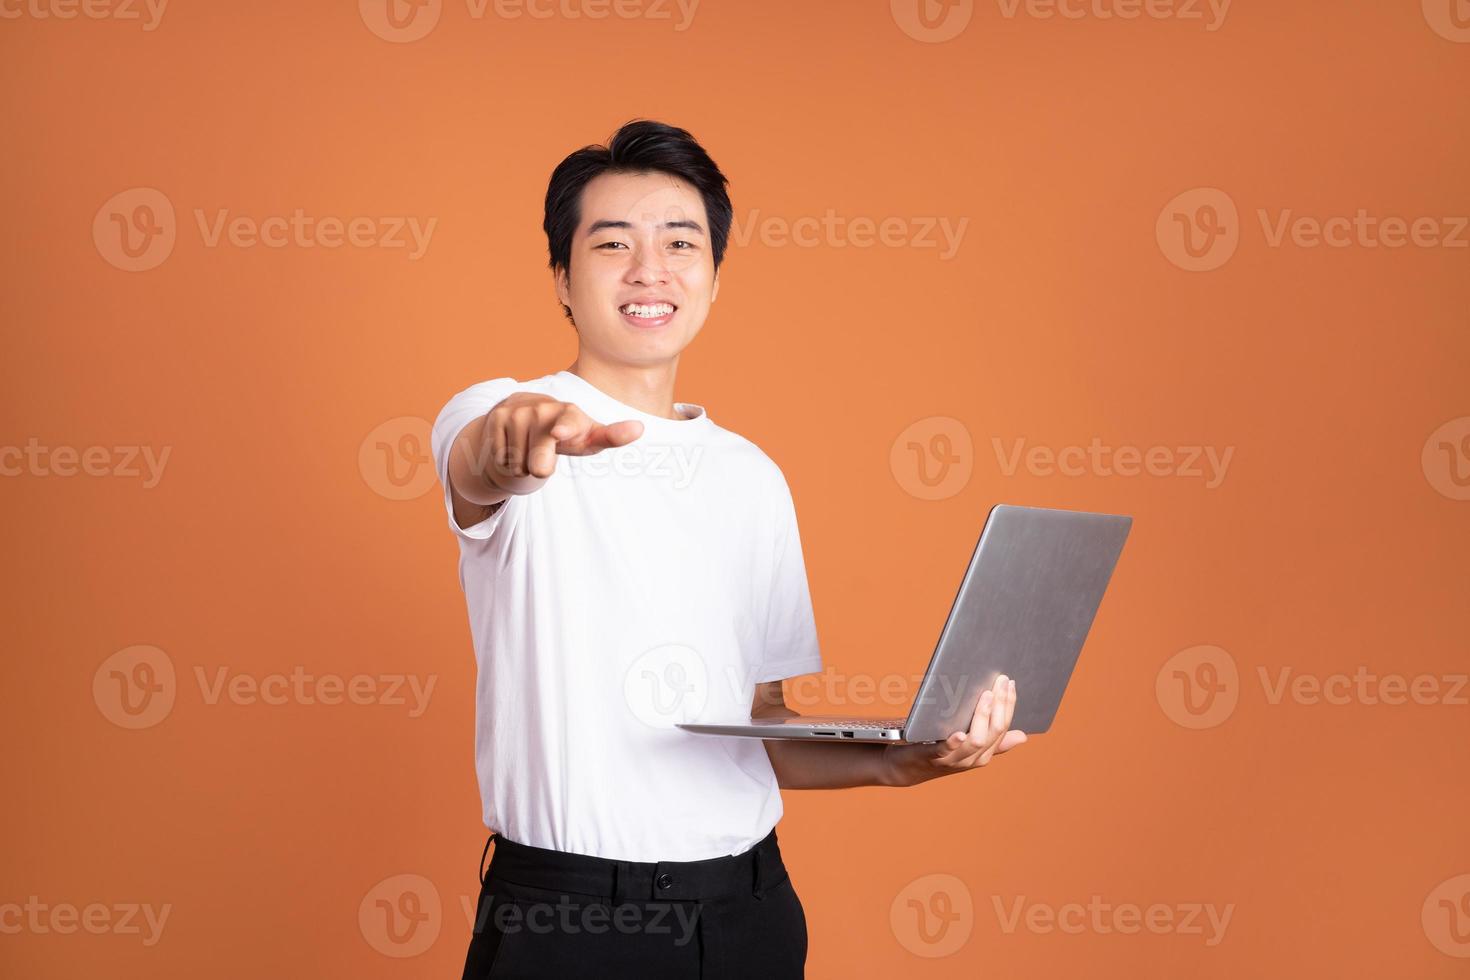 hombre asiático sosteniendo un portátil, aislado de fondo naranja foto